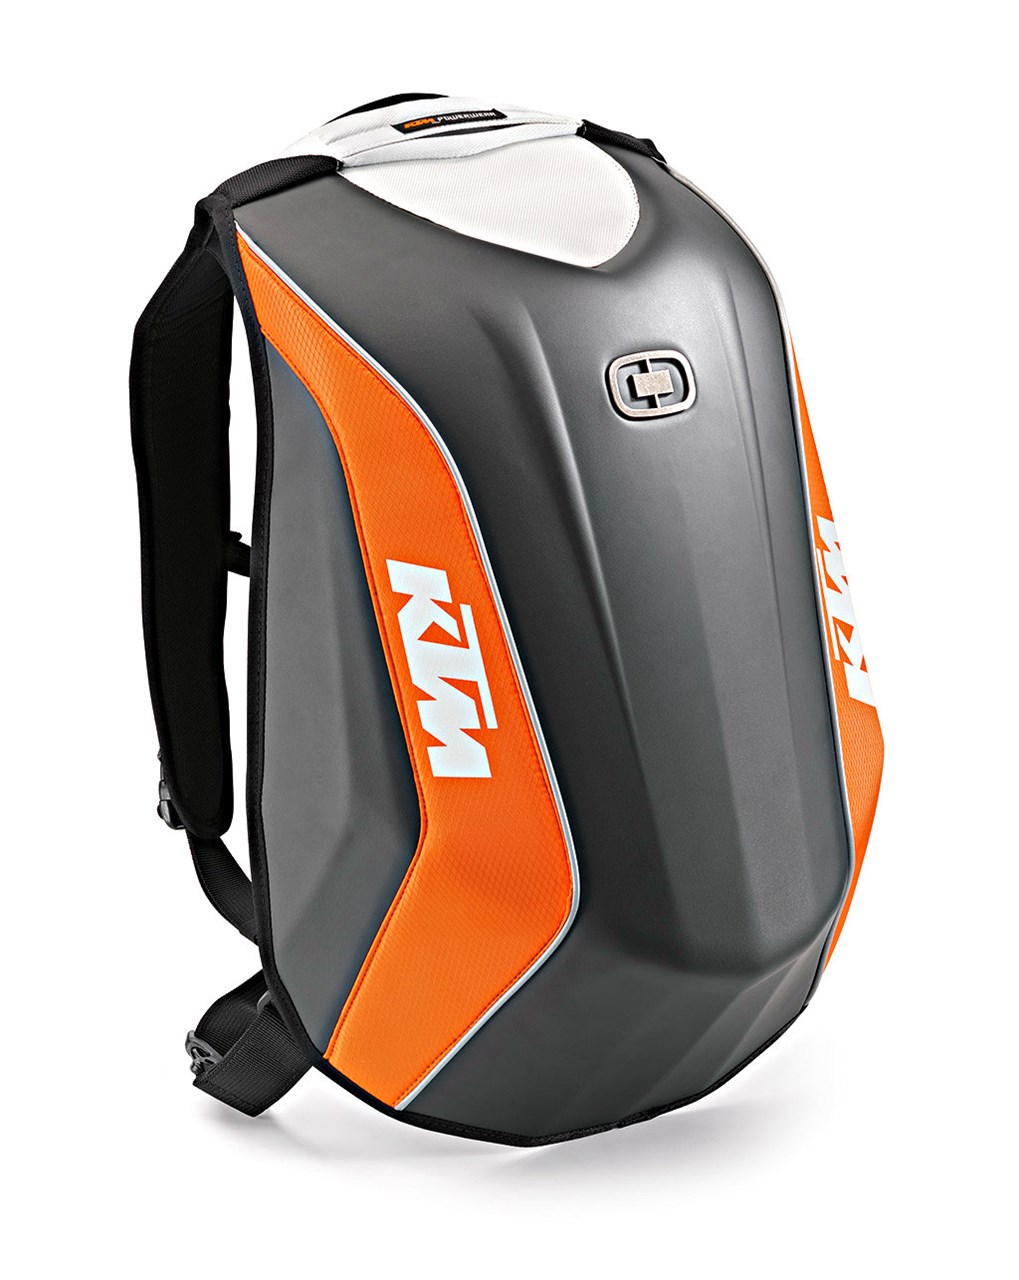 Bild von KTM - No Drag Bag Mach 3 One Size